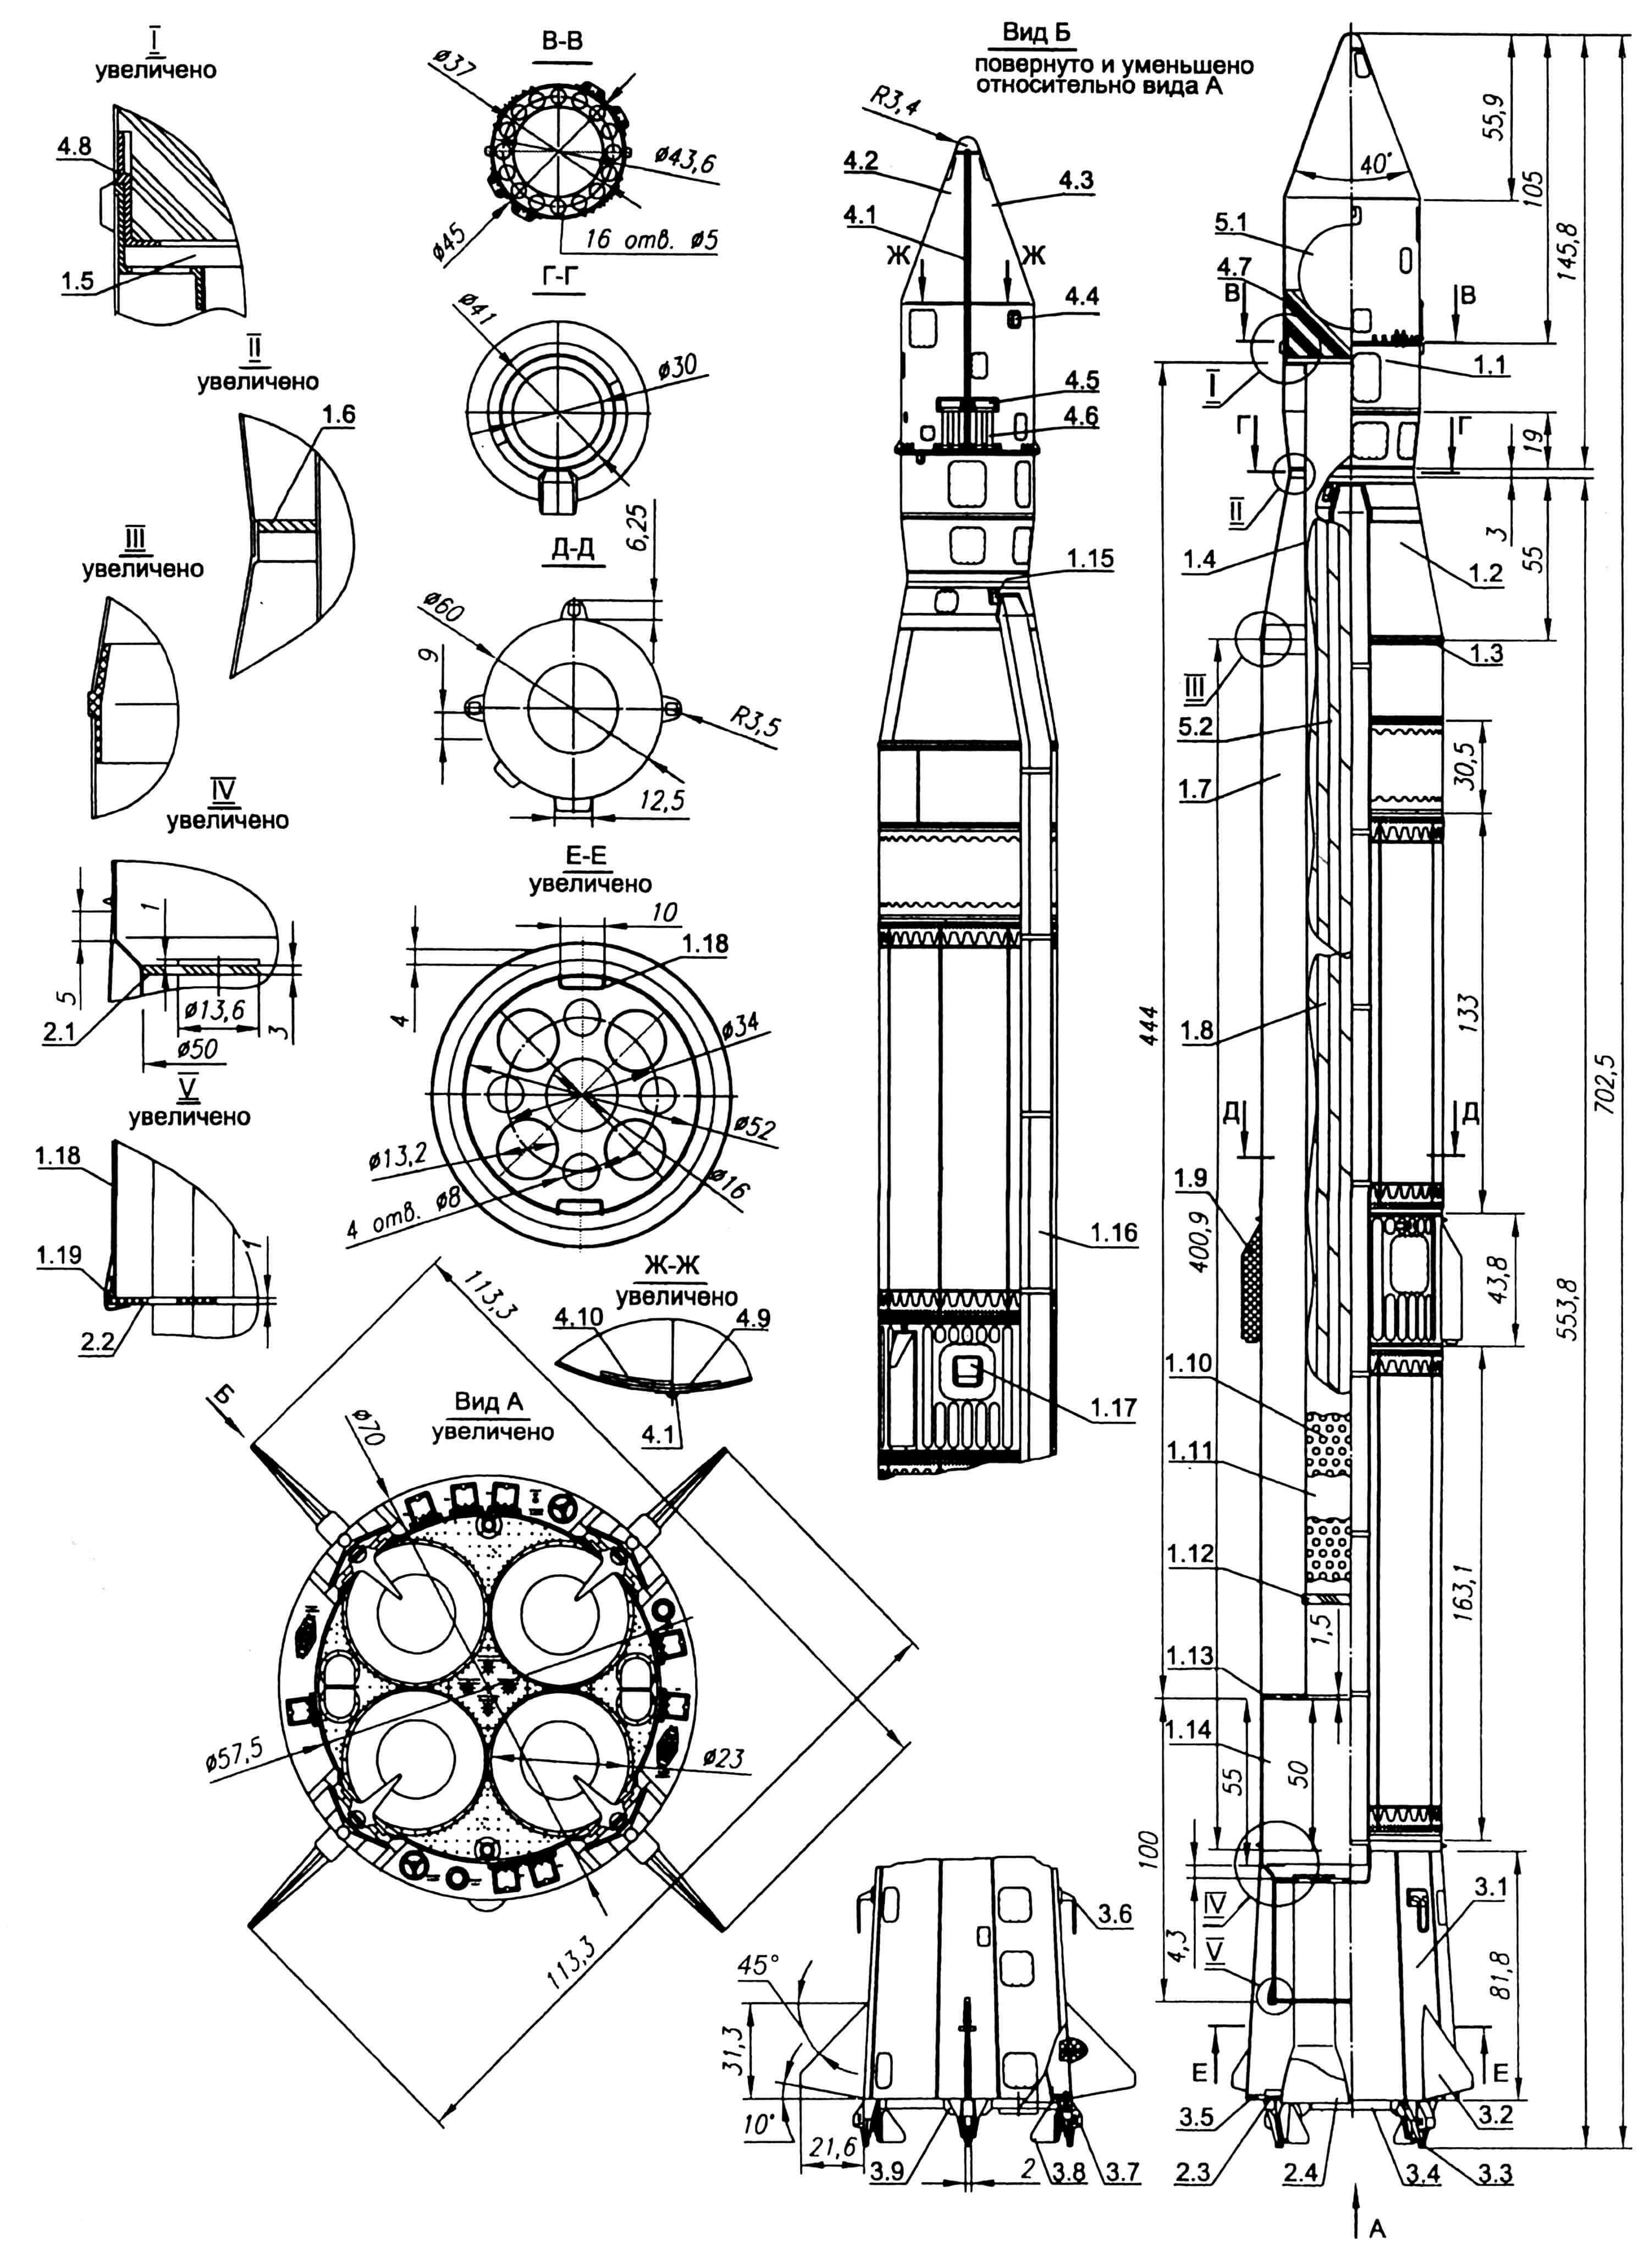 Модель-копия геофизической ракеты «Вертикаль-4». 1.Корпус модели: 1.1 — отсек полезной нагрузки; 1.2 — отсек носовой, конический; 1.3, 1.5, 1.6, 1.13, 1.19 — шпангоуты; 1.4 — отсек парашютный; 1.7 — часть корпуса, цилиндрическая; 1.8 — парашют основной; 1.9 — двигатель разделения; 1.10 — пыж; 1.11 — засыпка талька; 1.12 — штифт; 1.14 — корпус двигательного отсека; 1.15, 1.17 — обтекатели; 1.16 — гаргрот; 1.18— скоба П-образная, стопорная (2 шт.). 2. Двигательный отсек: 2.1 — шпангоут верхний; 2.2— шпангоут средний; 2.3 — трубка двигателя; 2.4 — шпангоут нижний. 3. Хвостовой отсек: 3.1. — конус; 3.2 — консоль стабилизатора; 3.3 — опора стартовая; 3.4 — цилиндр опорный; 3.5 — шпангоут торцевой; 3.6 — антенна телеметрии; 3.7 — обтекатель; 3.8 — руль газовый; 3.9 — основание газового руля. 4. Головной обтекатель: 4.1 — имитатор стыка; 4.2, 4.3 — половины головного обтекателя; 4.4, 4.5 — обтекатели; 4.6 — толкатель пружинный; 4.7 — бобышка с внутренним конусом; 4.8 — шпангоут; 4.9 — зуб заходной; 4.10 —деталь ответная с пазом. 5. Макет полезной нагрузки: 5.1 — мяч для настольного тенниса; 5.2 — парашют.